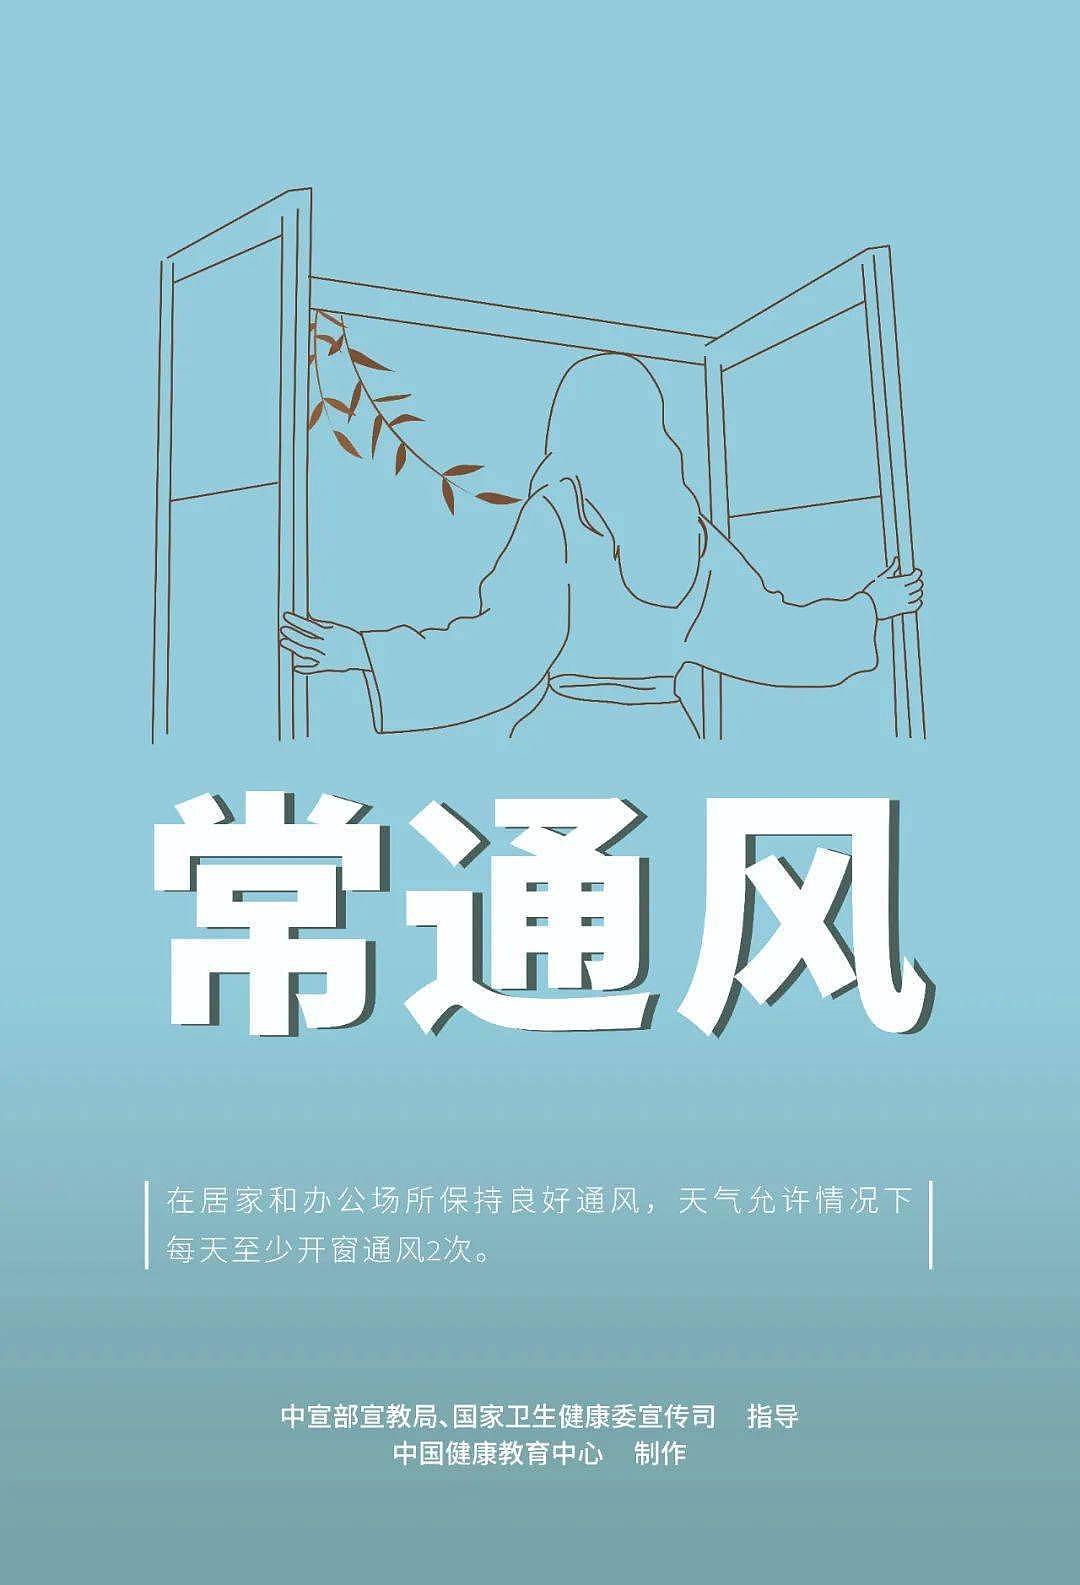 【疫情防控】新冠肺炎疫情防护知识宣传海报 - 4